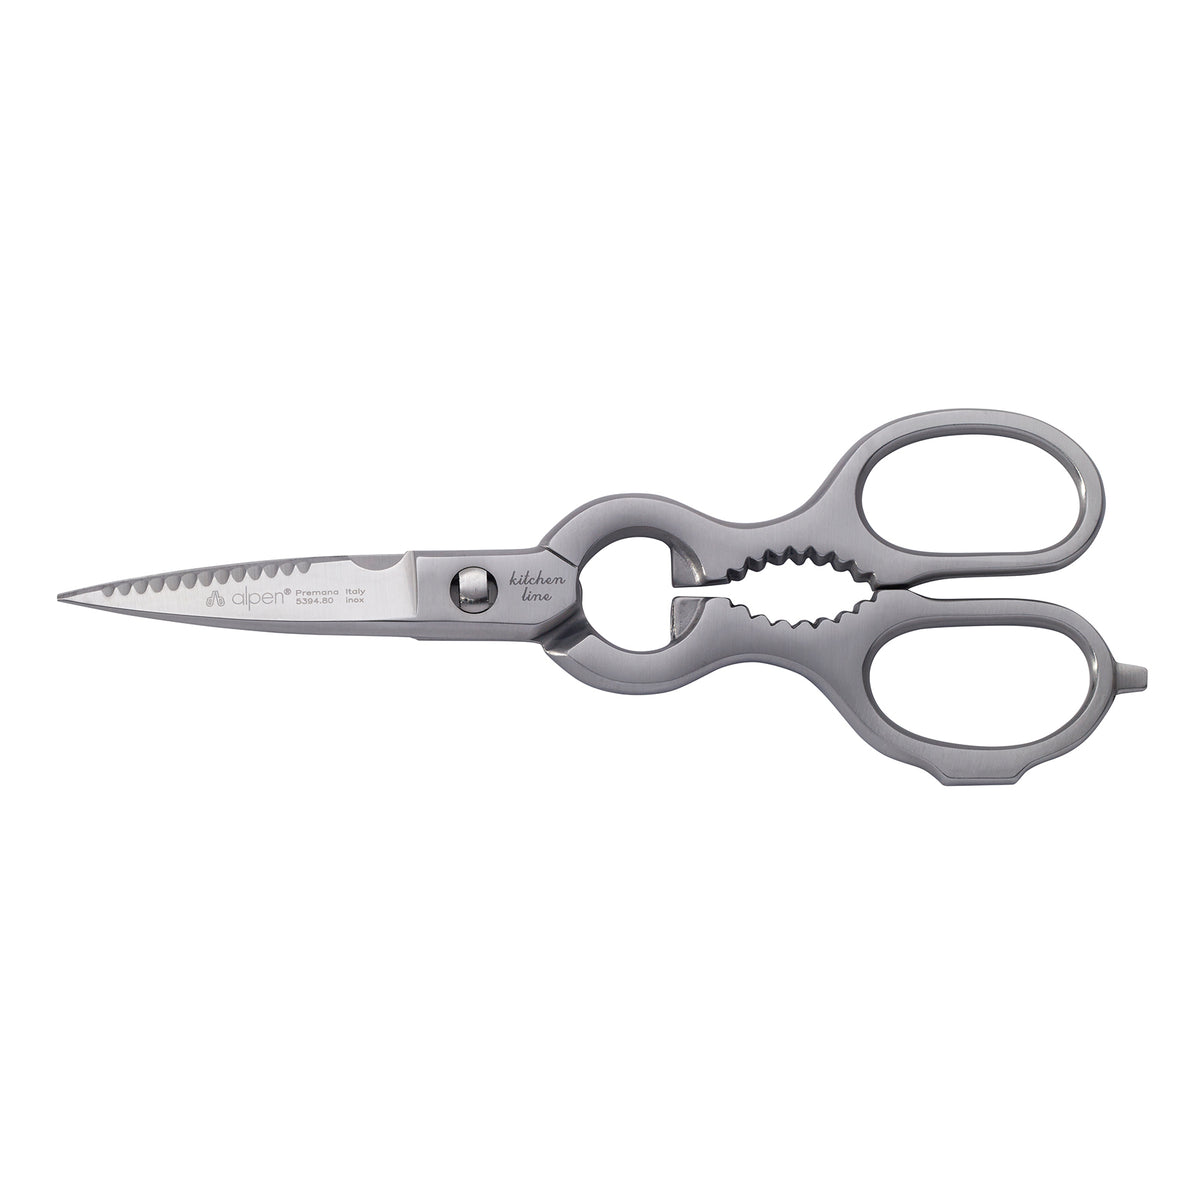 alpen kitchen scissors